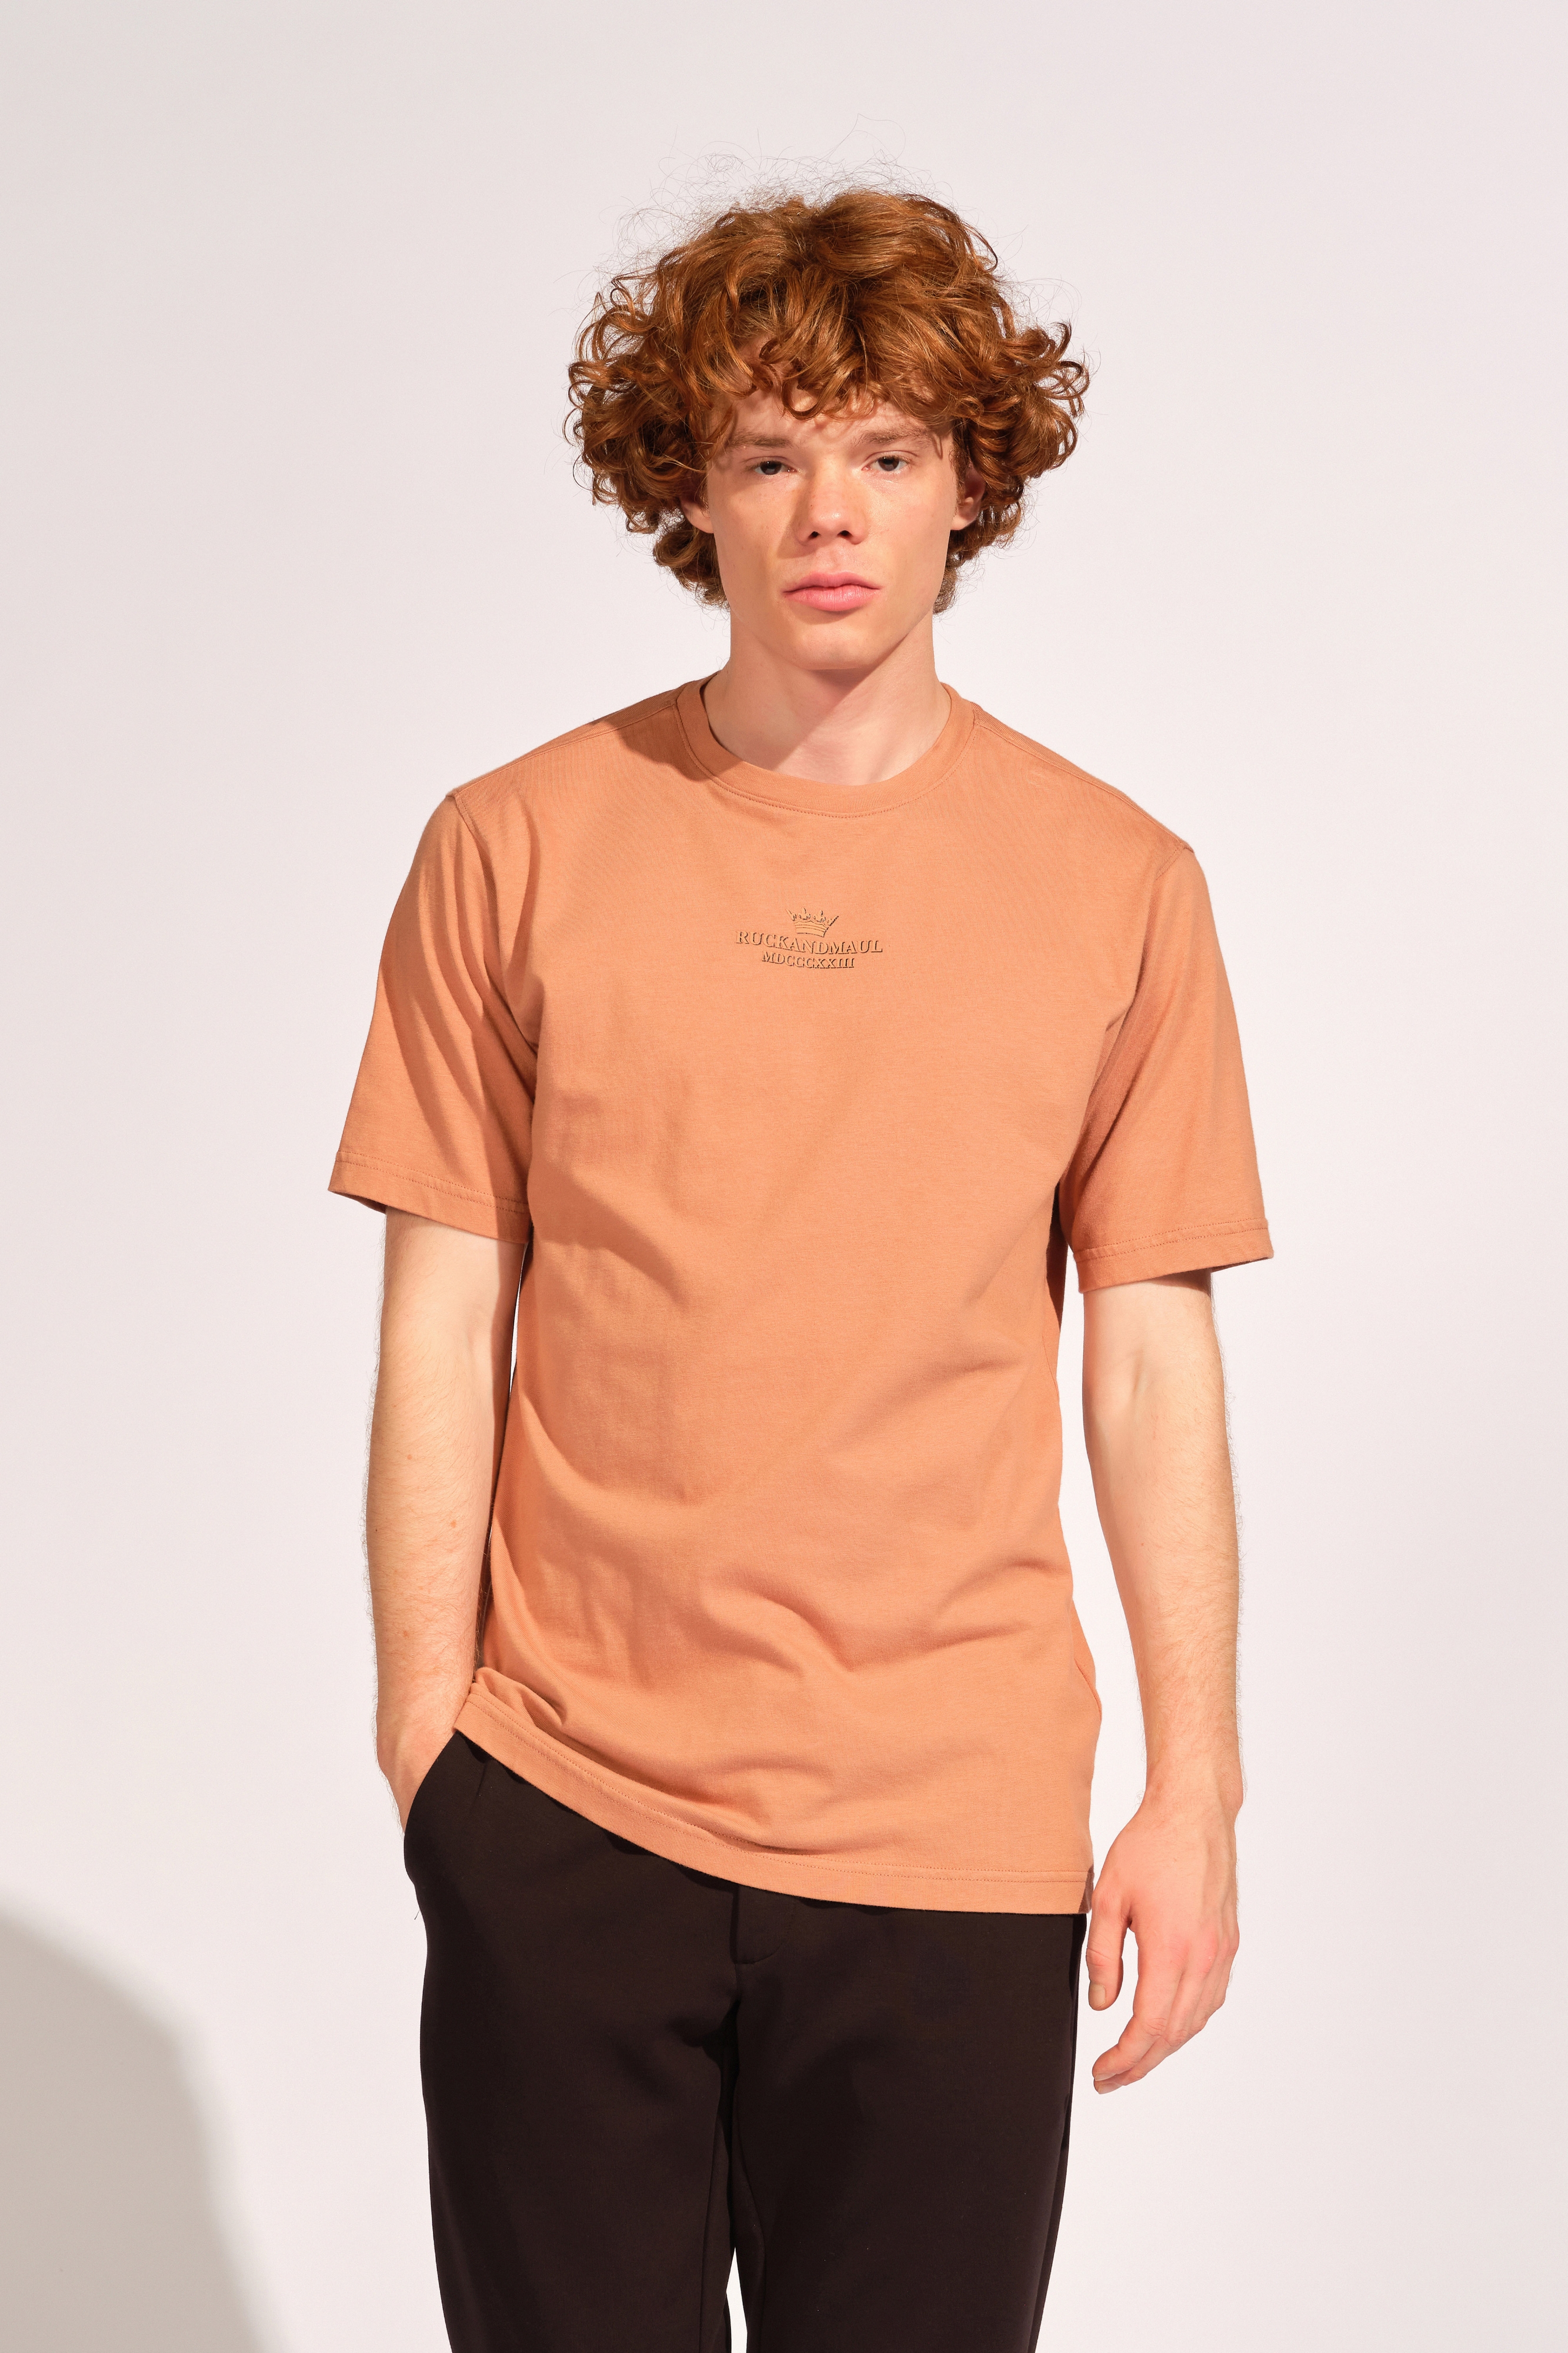 Dunkle Hautfarbe Mann T-shirt